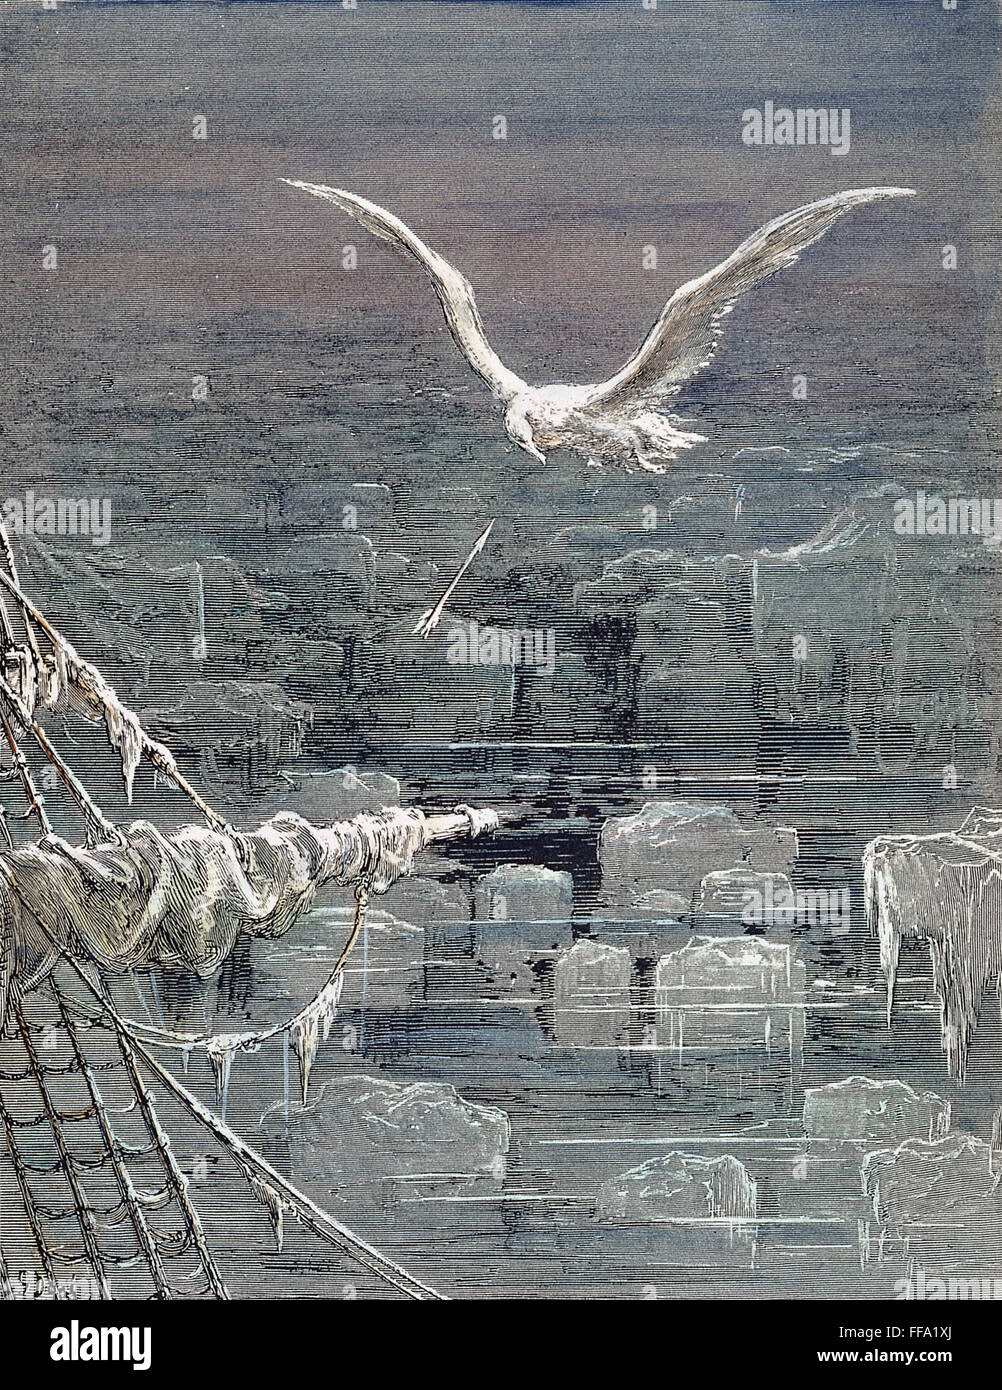 COLERIDGE: Antico mariner. /Nil mariner germogli albatross. Incisione su legno dopo Gustave DorΘ (1832-1883) per Samuel Coleridge "Ballata del Vecchio Marinaio", 1798. Foto Stock